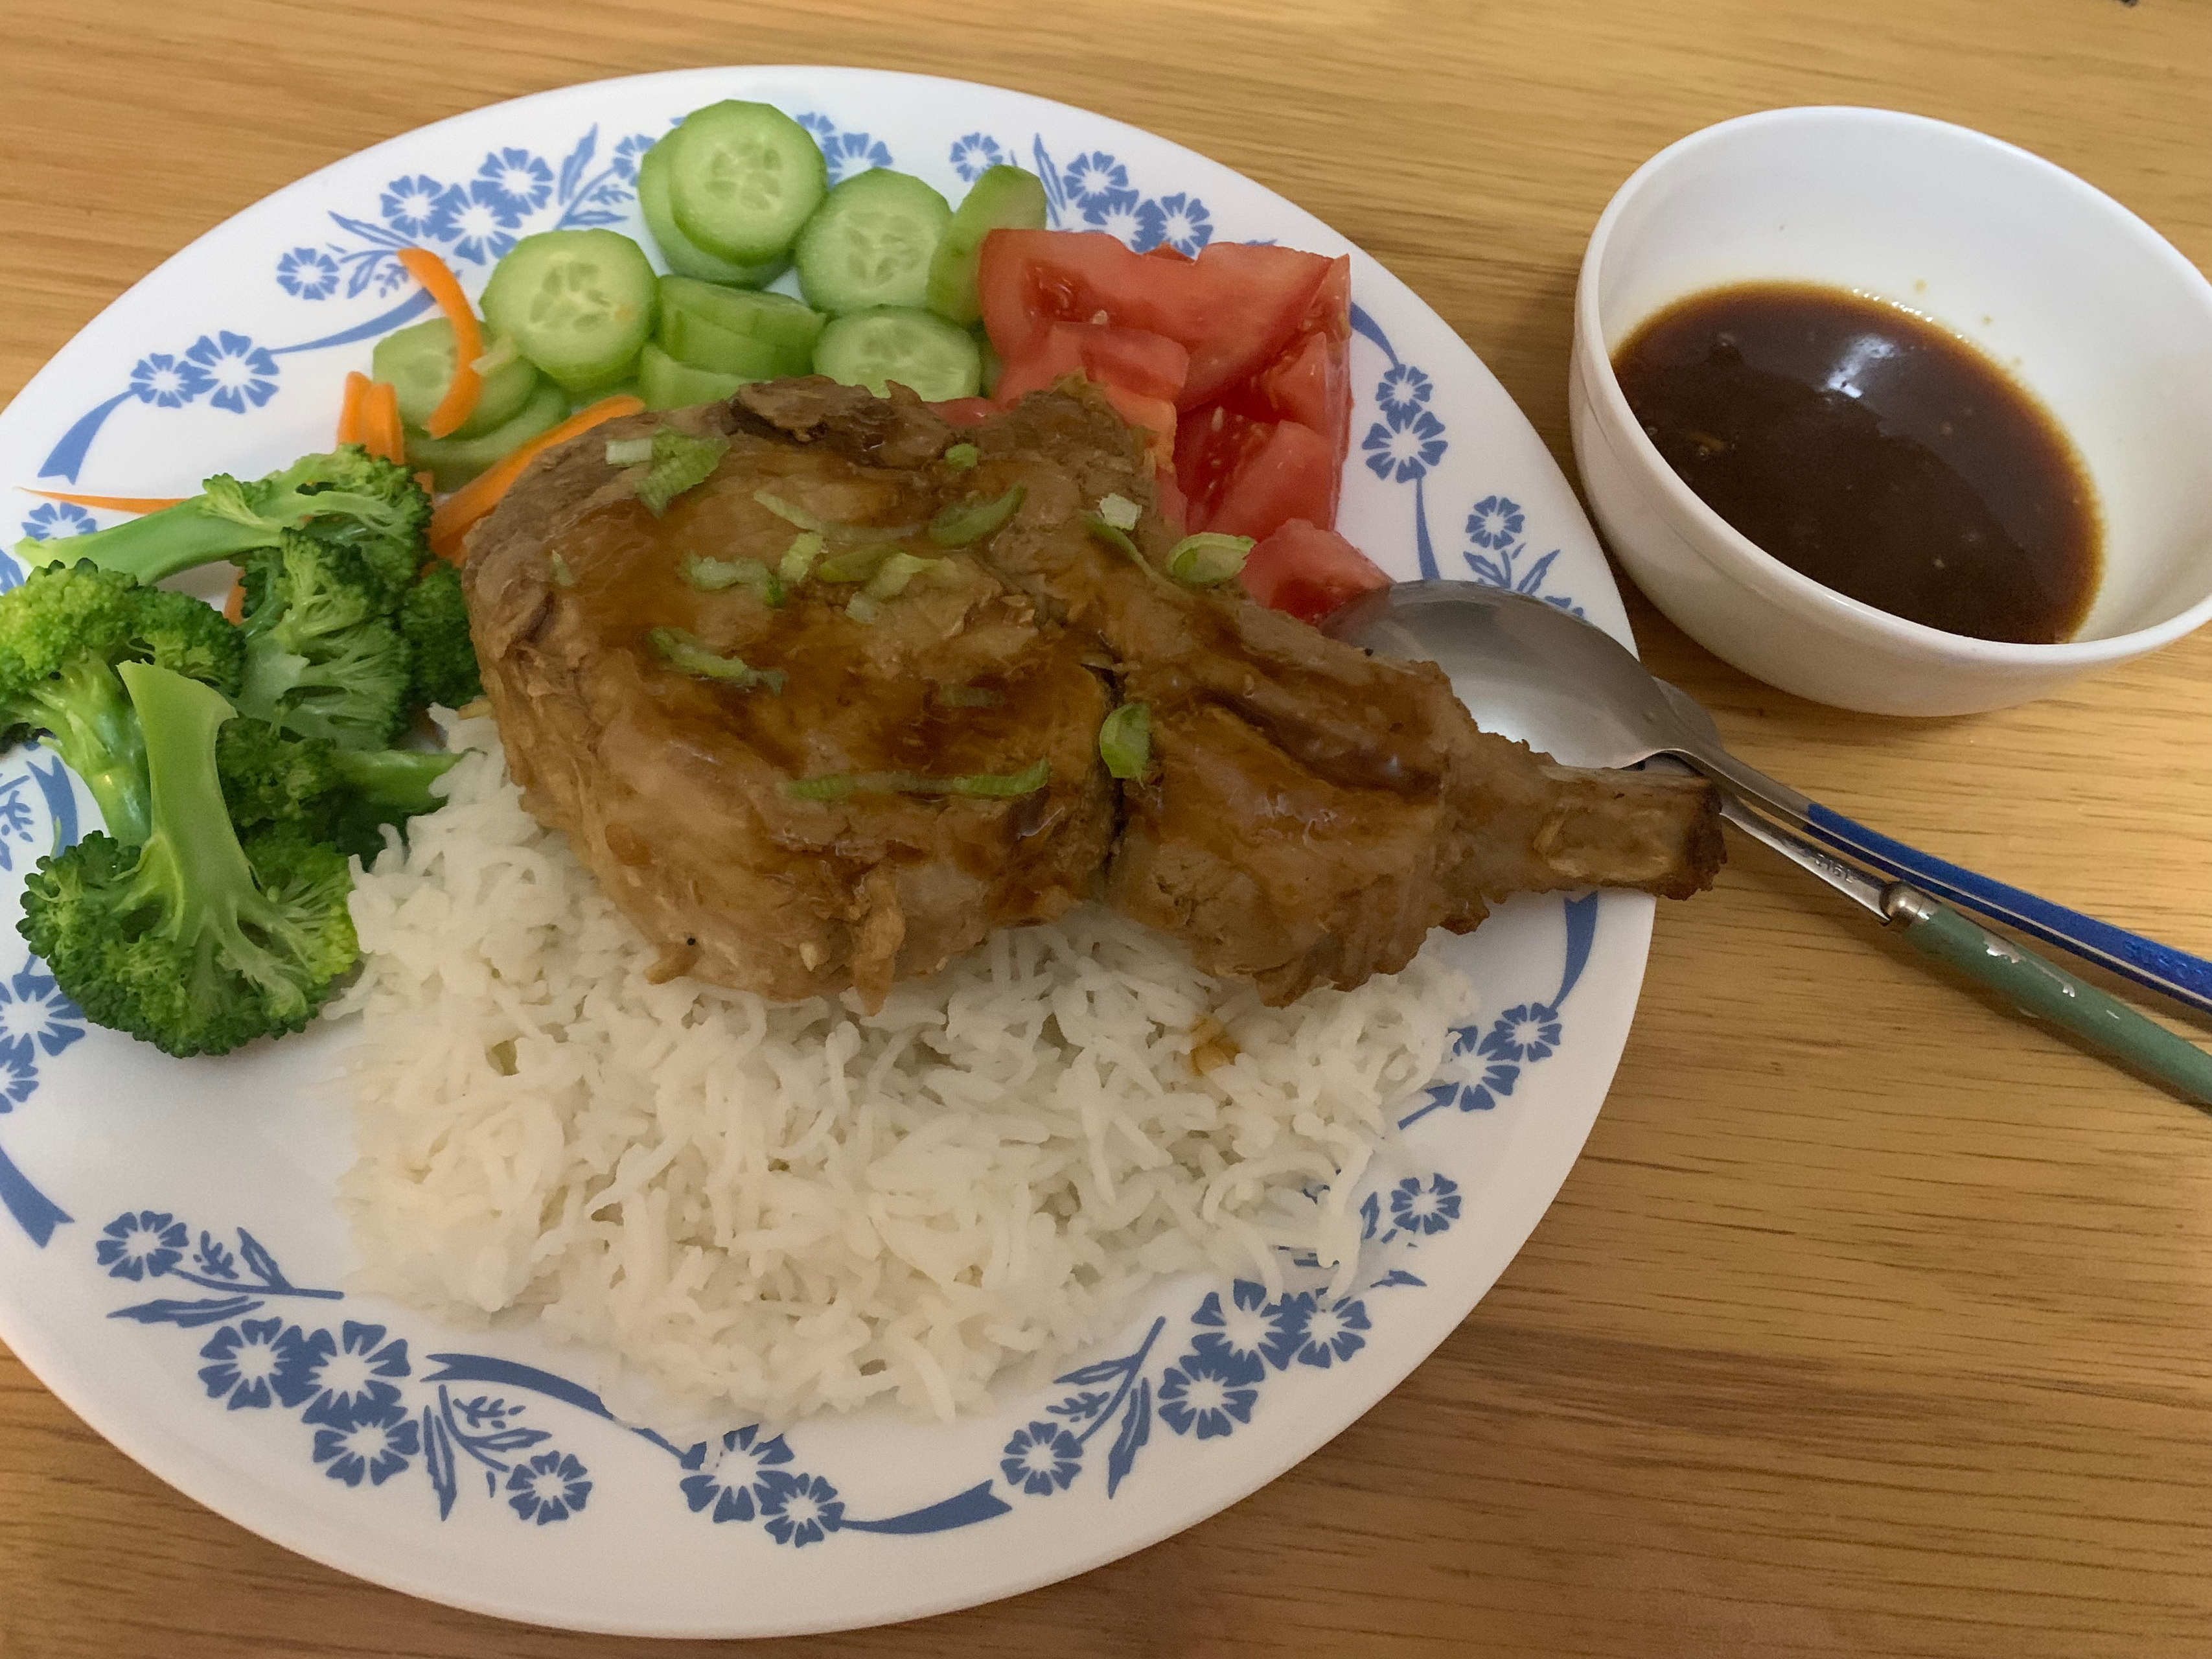 越南香茅猪排 烤箱版 夏日清凉午餐/晚餐